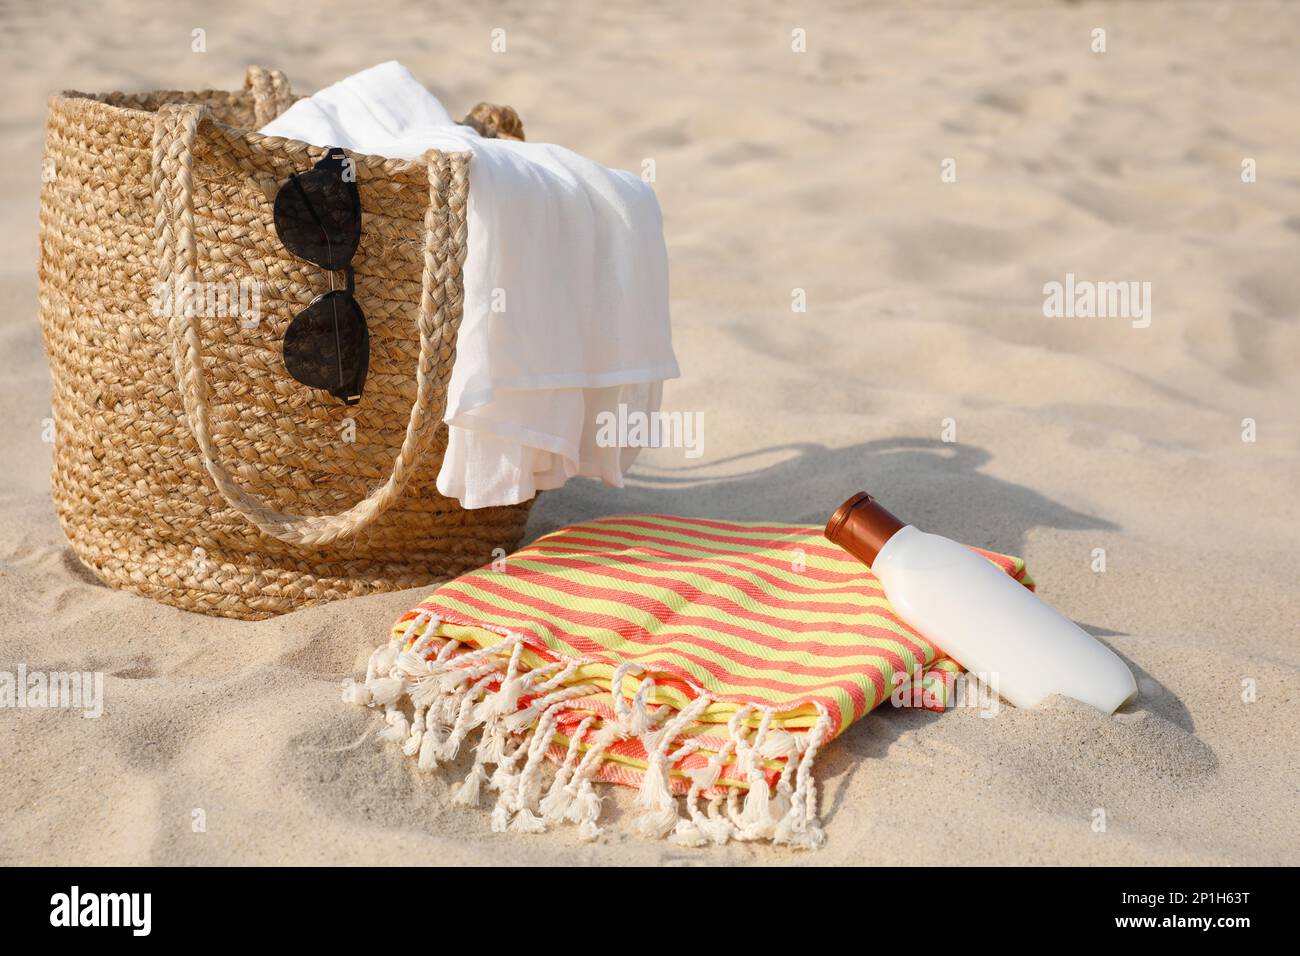 Strandtasche, Handtuch, Decke, Sonnenbrille und Sonnencreme auf Sand  Stockfotografie - Alamy